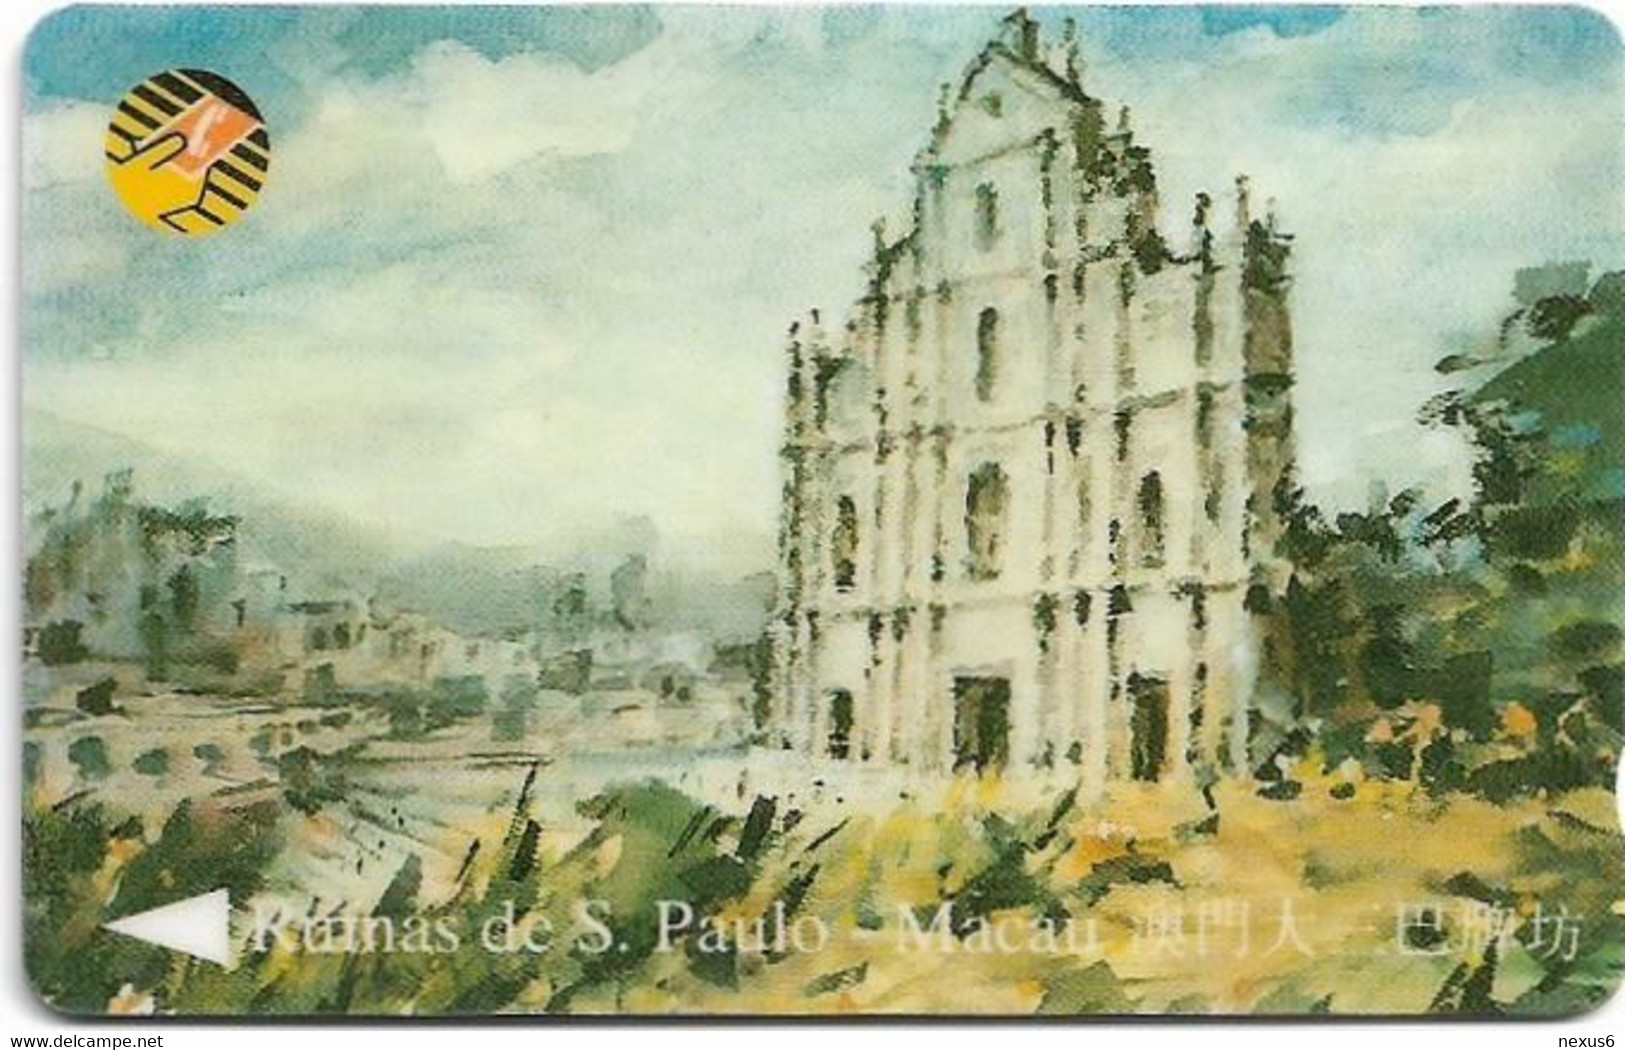 Macau - CTM (GPT) - Paintings - Ruinas De S. Paulo - 9MACB - 1994, Used - Macao